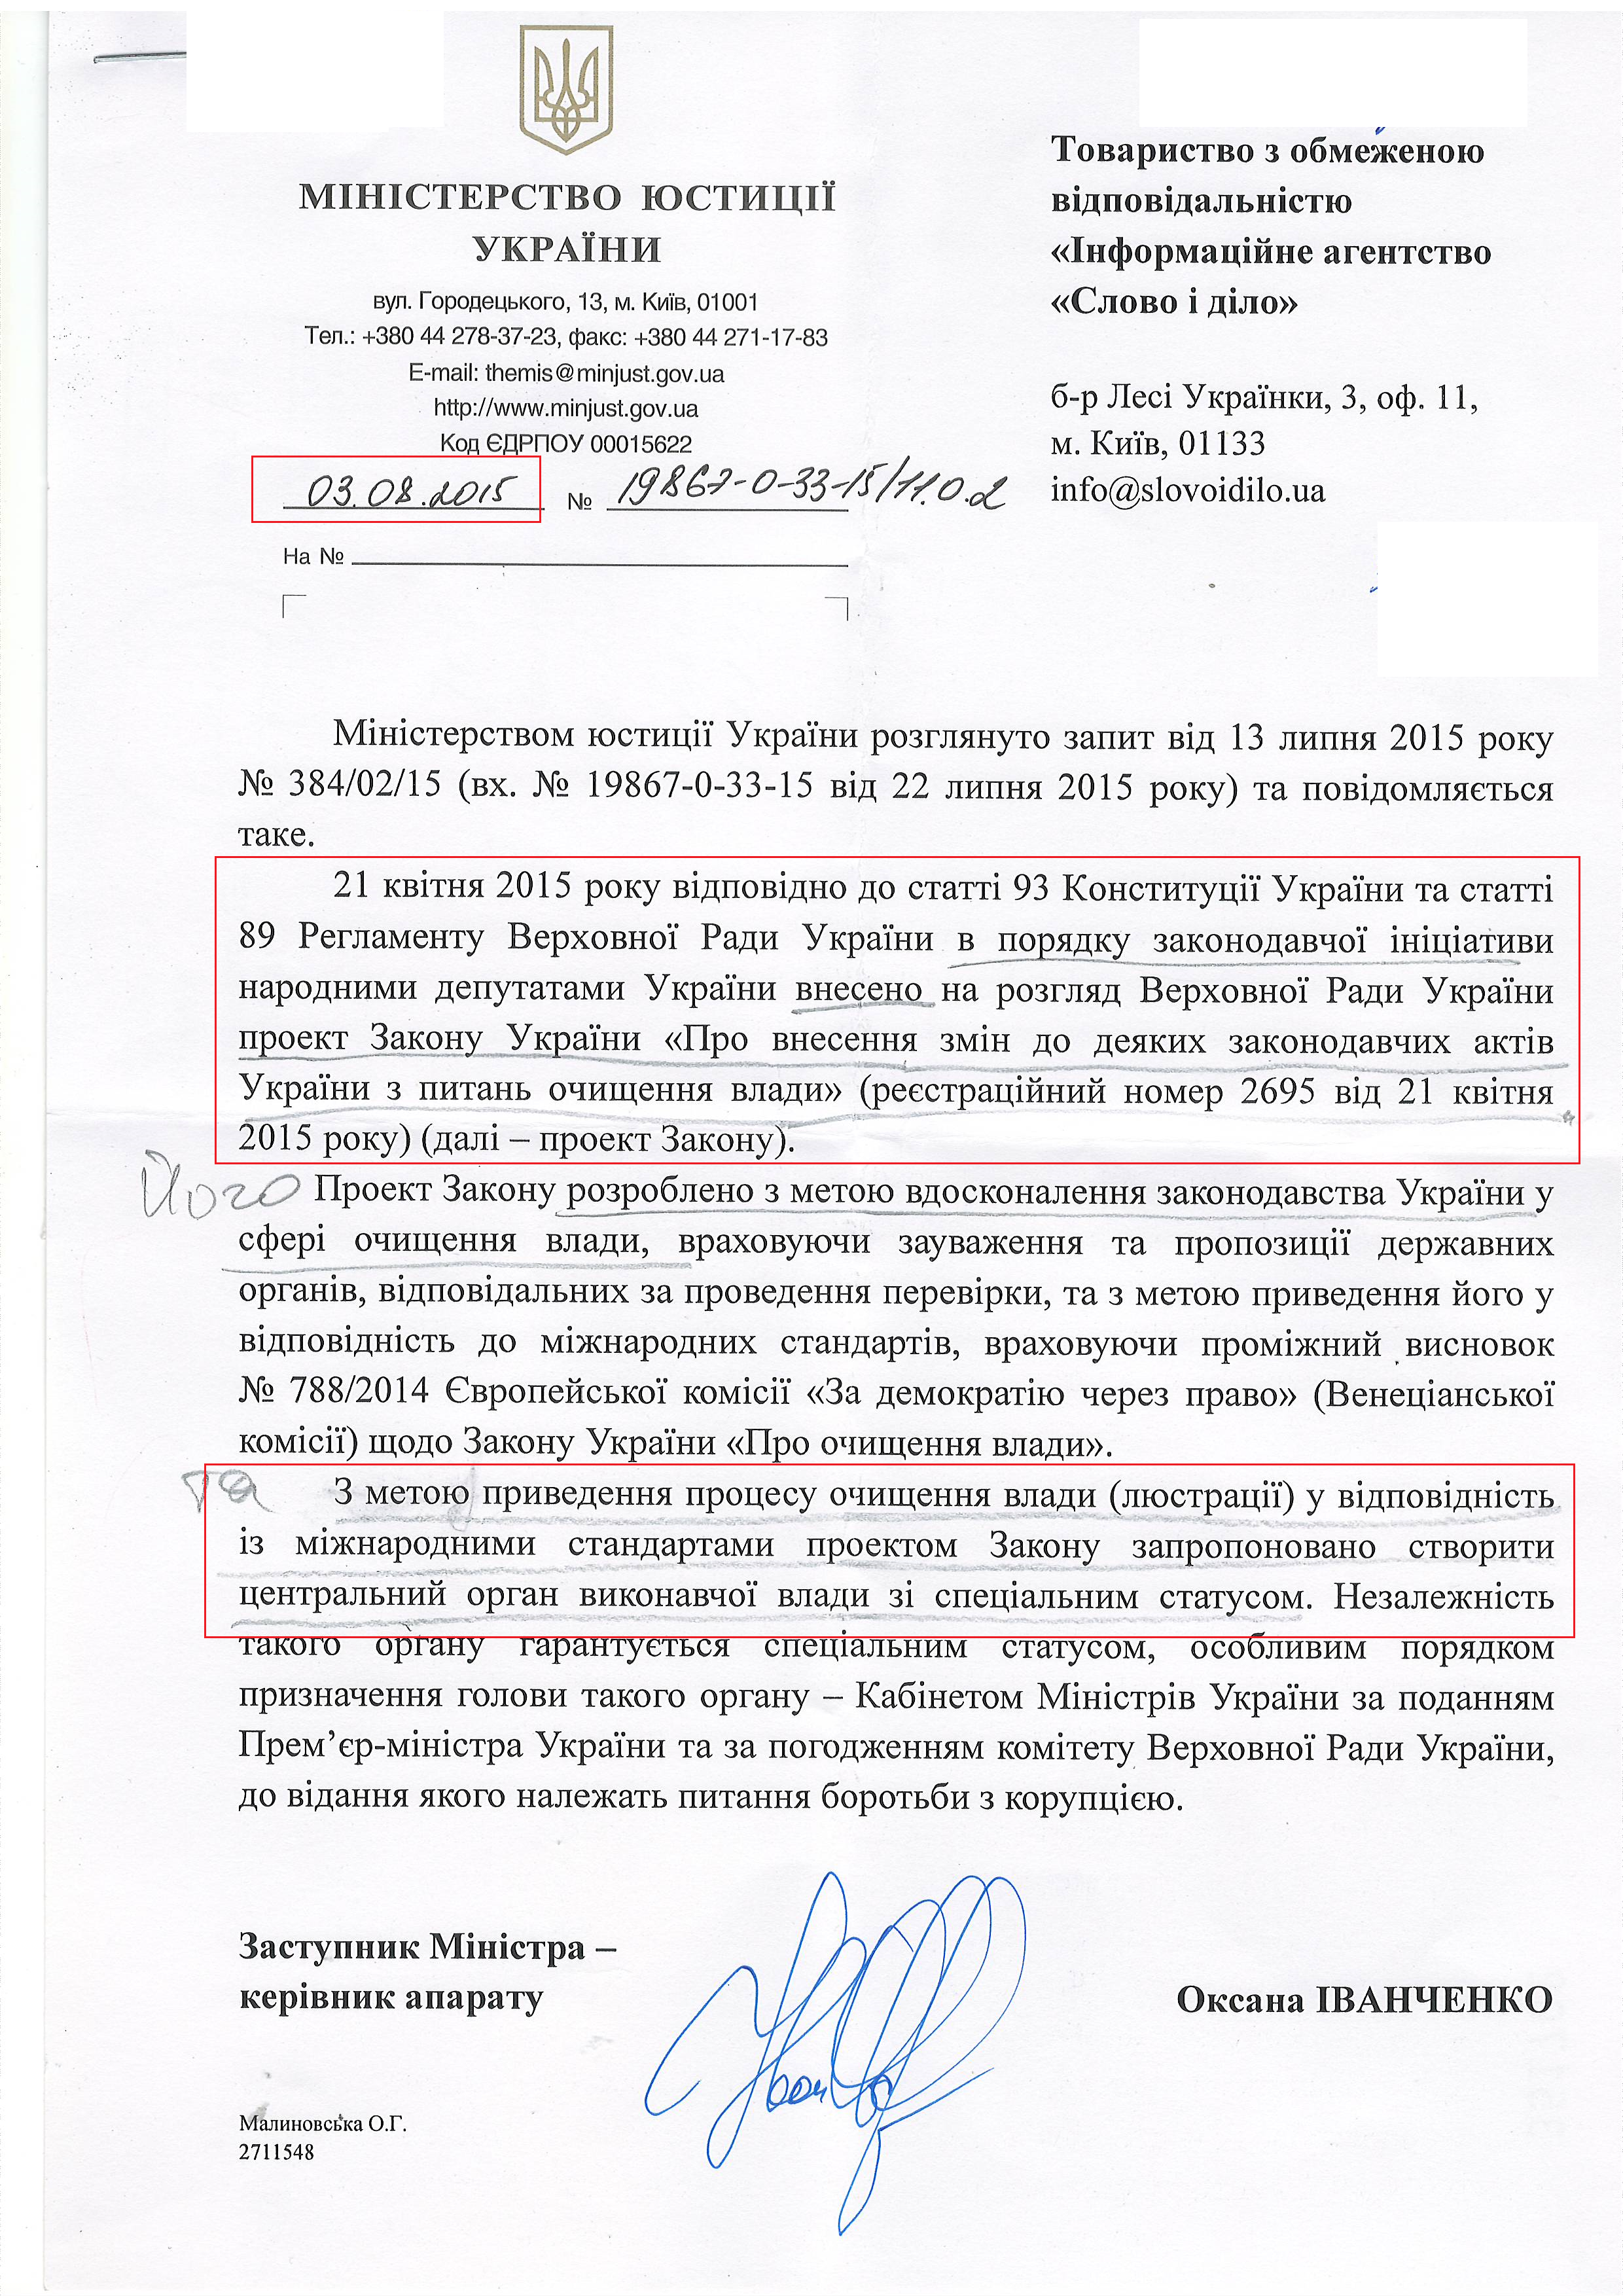 Лист Міністерства юстиції України від 3 серпня 2015 року